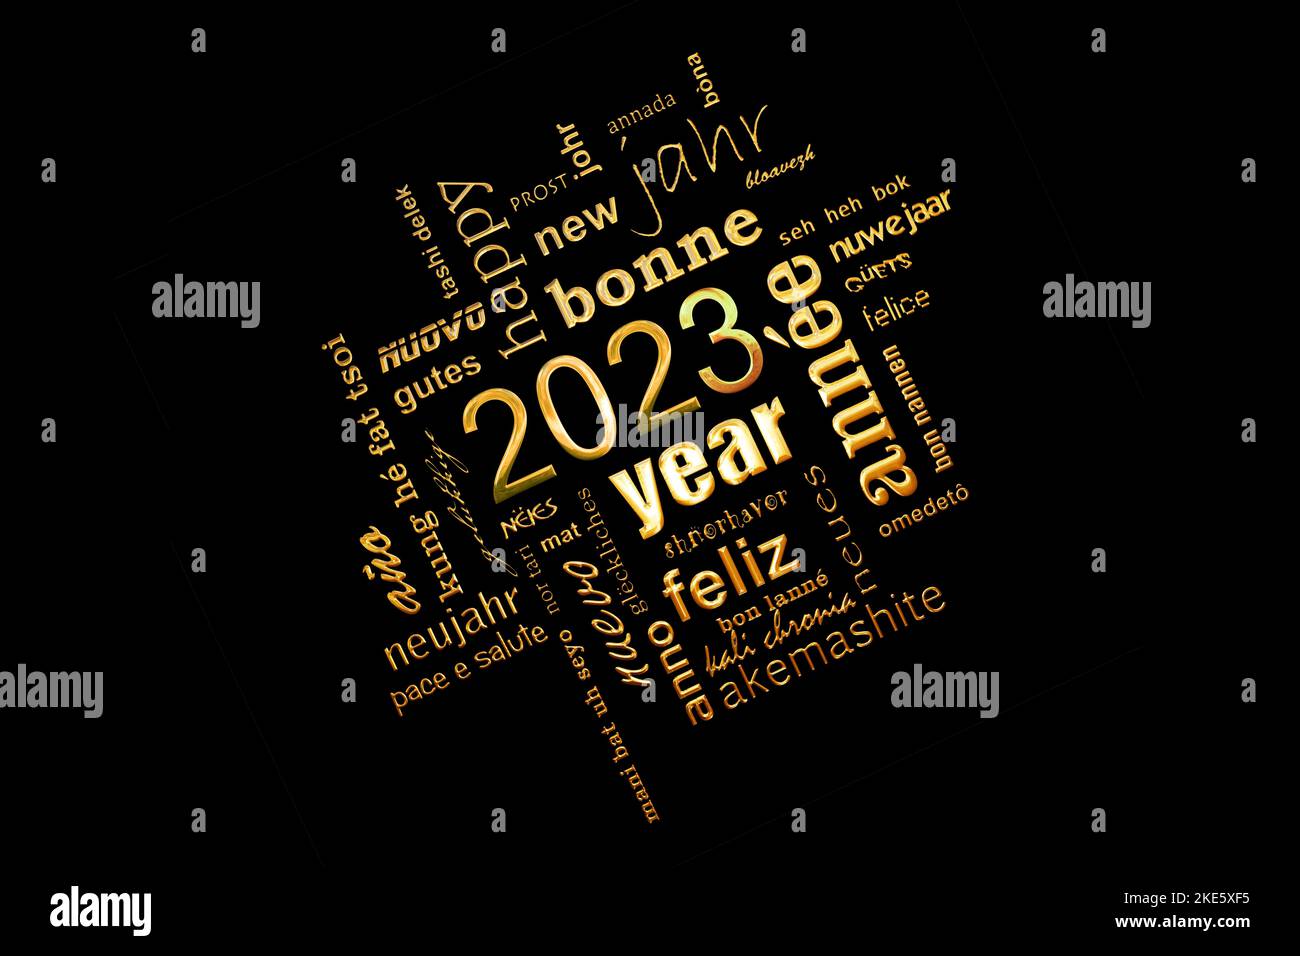 2023 biglietto d'auguri multilingue per il nuovo anno con parole d'oro su sfondo nero Foto Stock